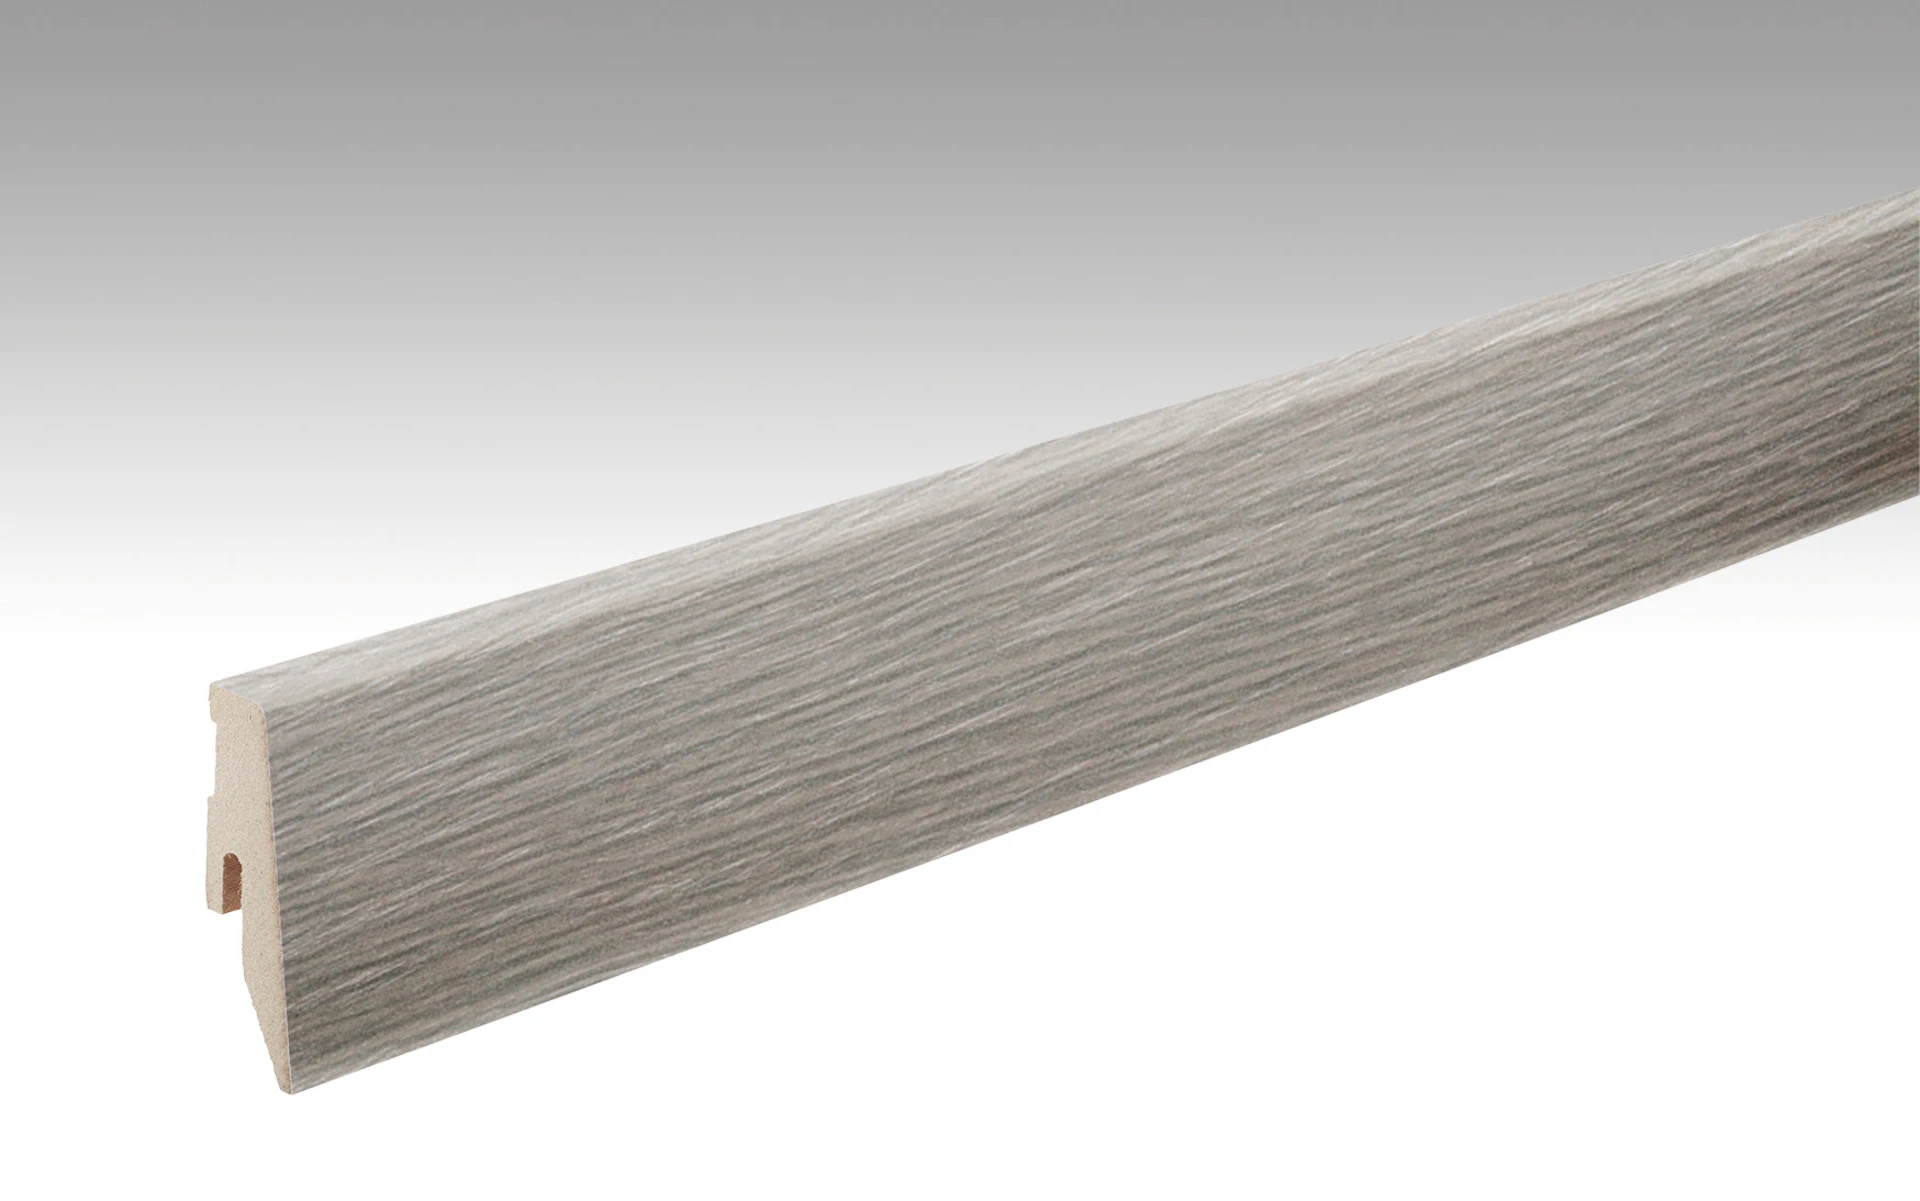 Battiscopa MEISTER rovere bianco-grigio 6277 - 2380 x 60 x 20 mm (200005-2380-06277)